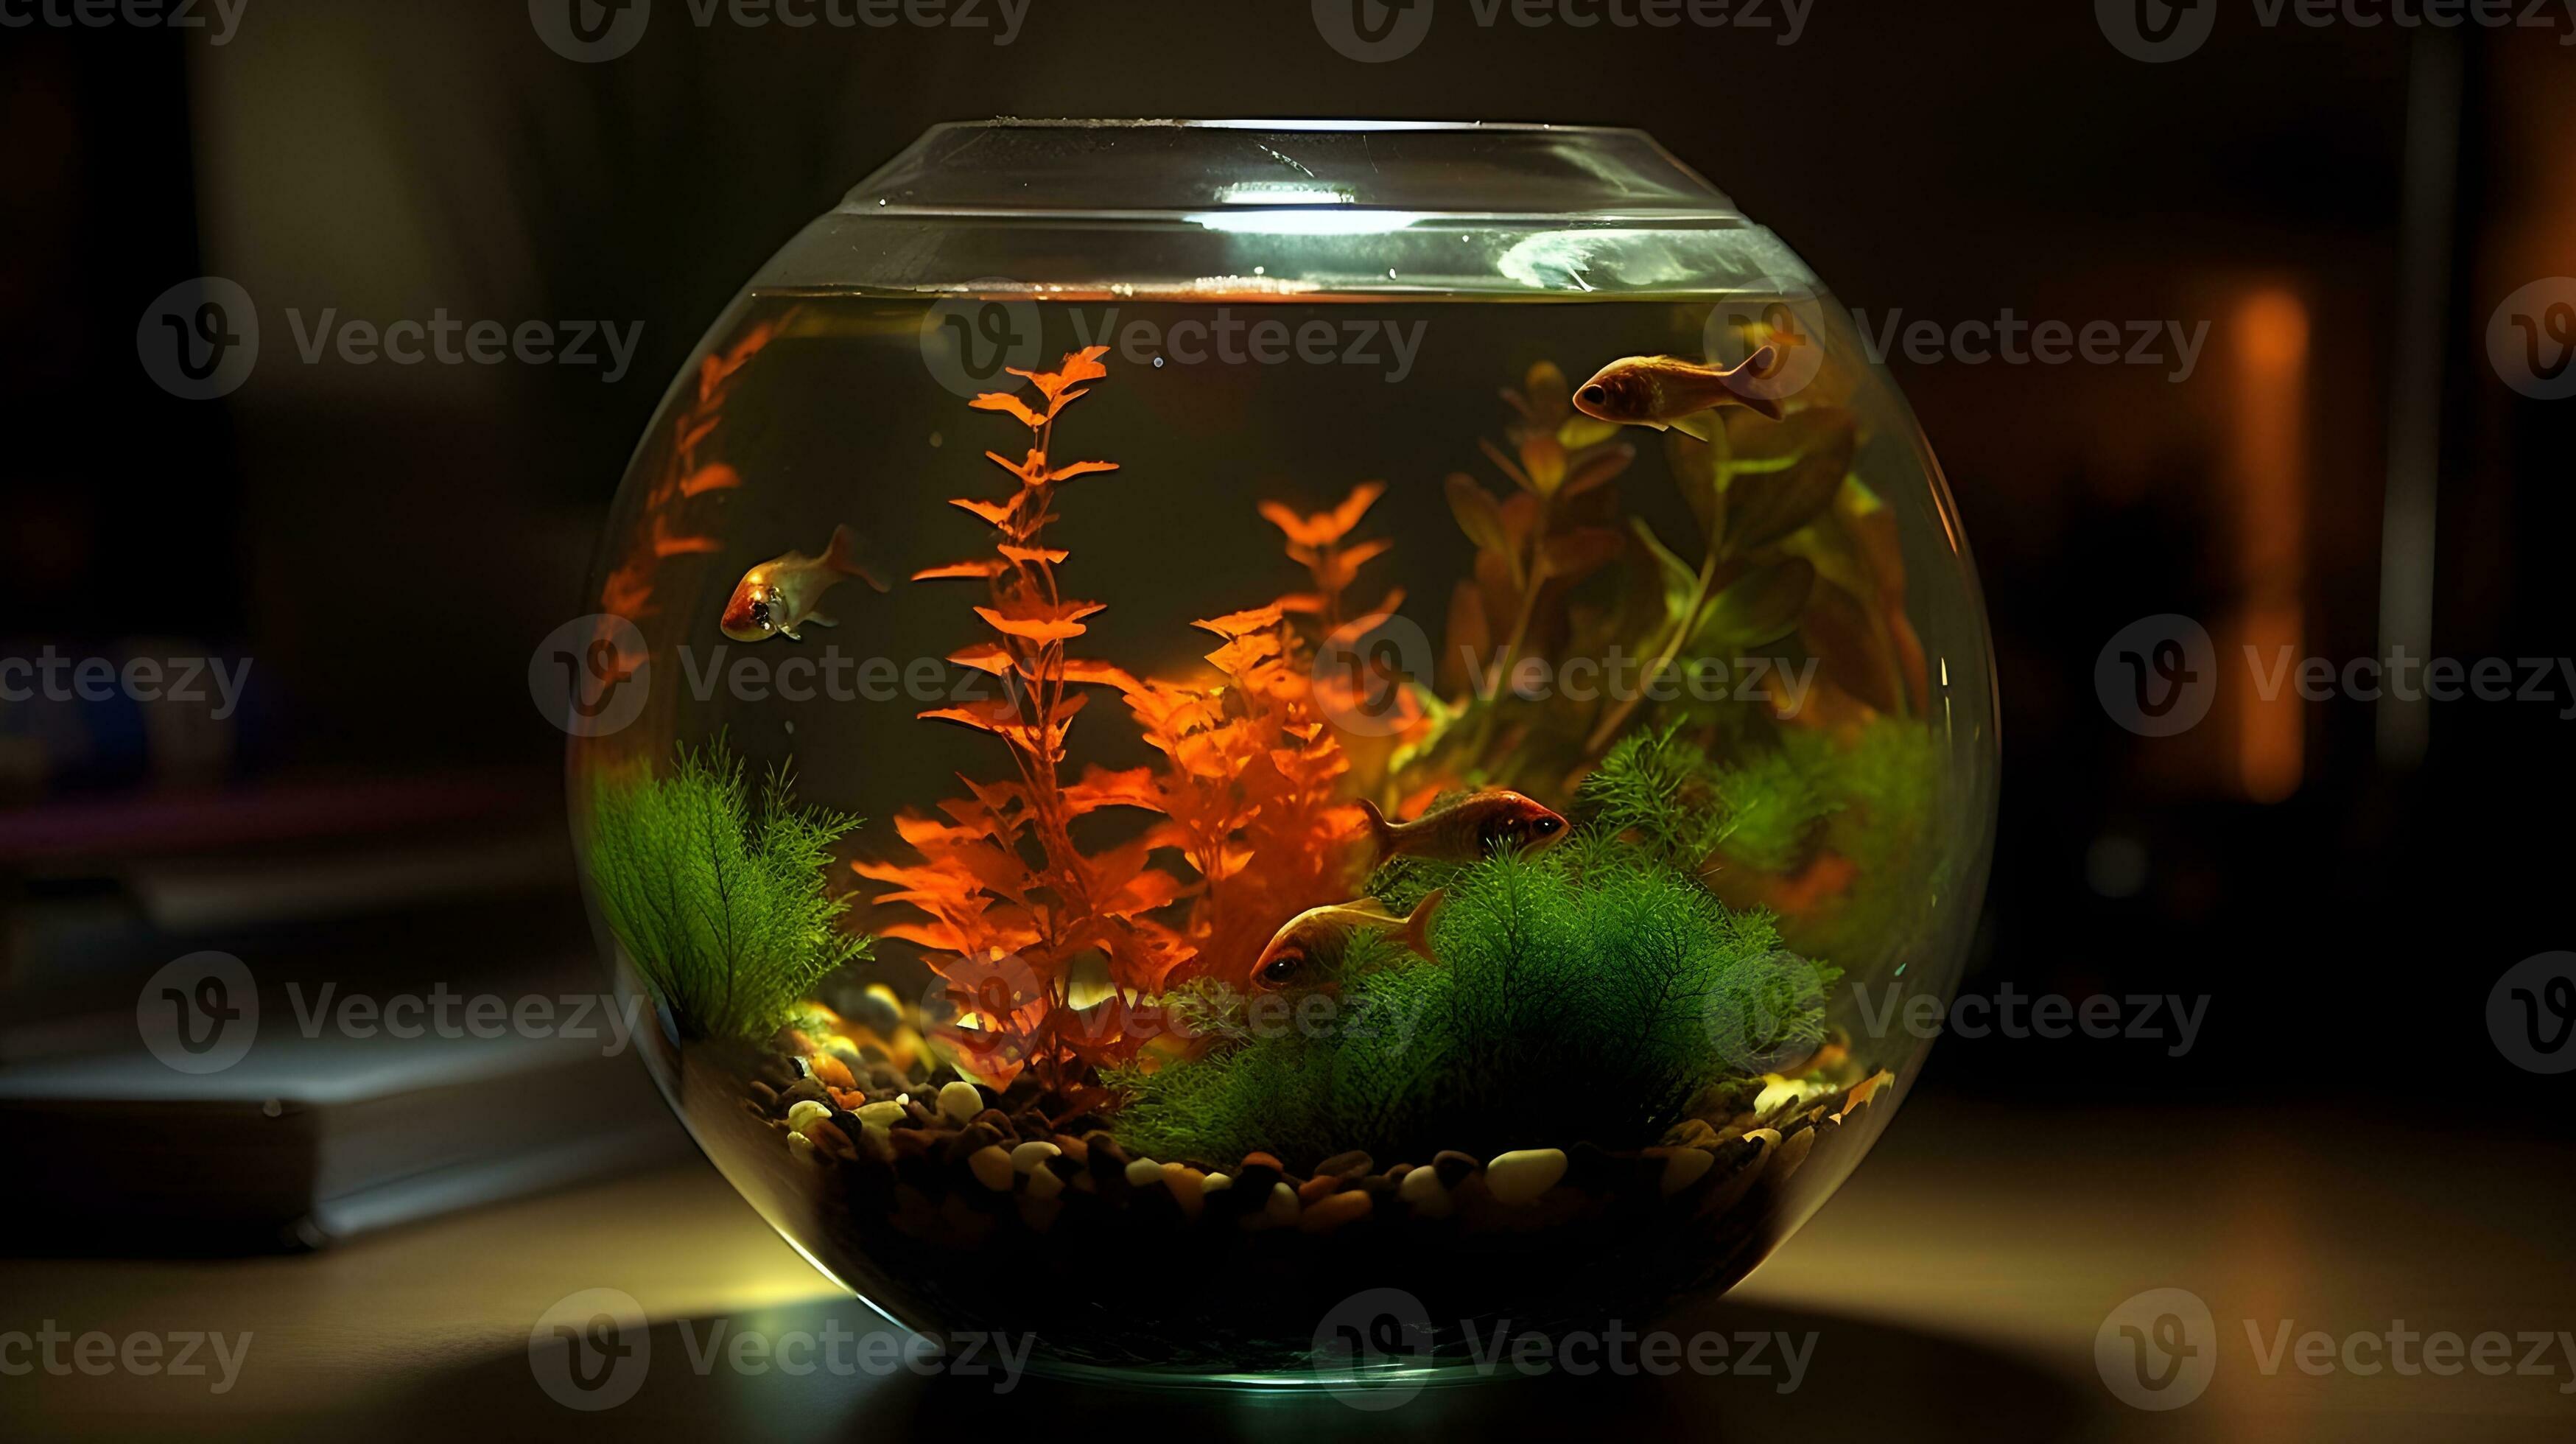 Vibrant underwater ecosystem in a small round fish tank aquarium